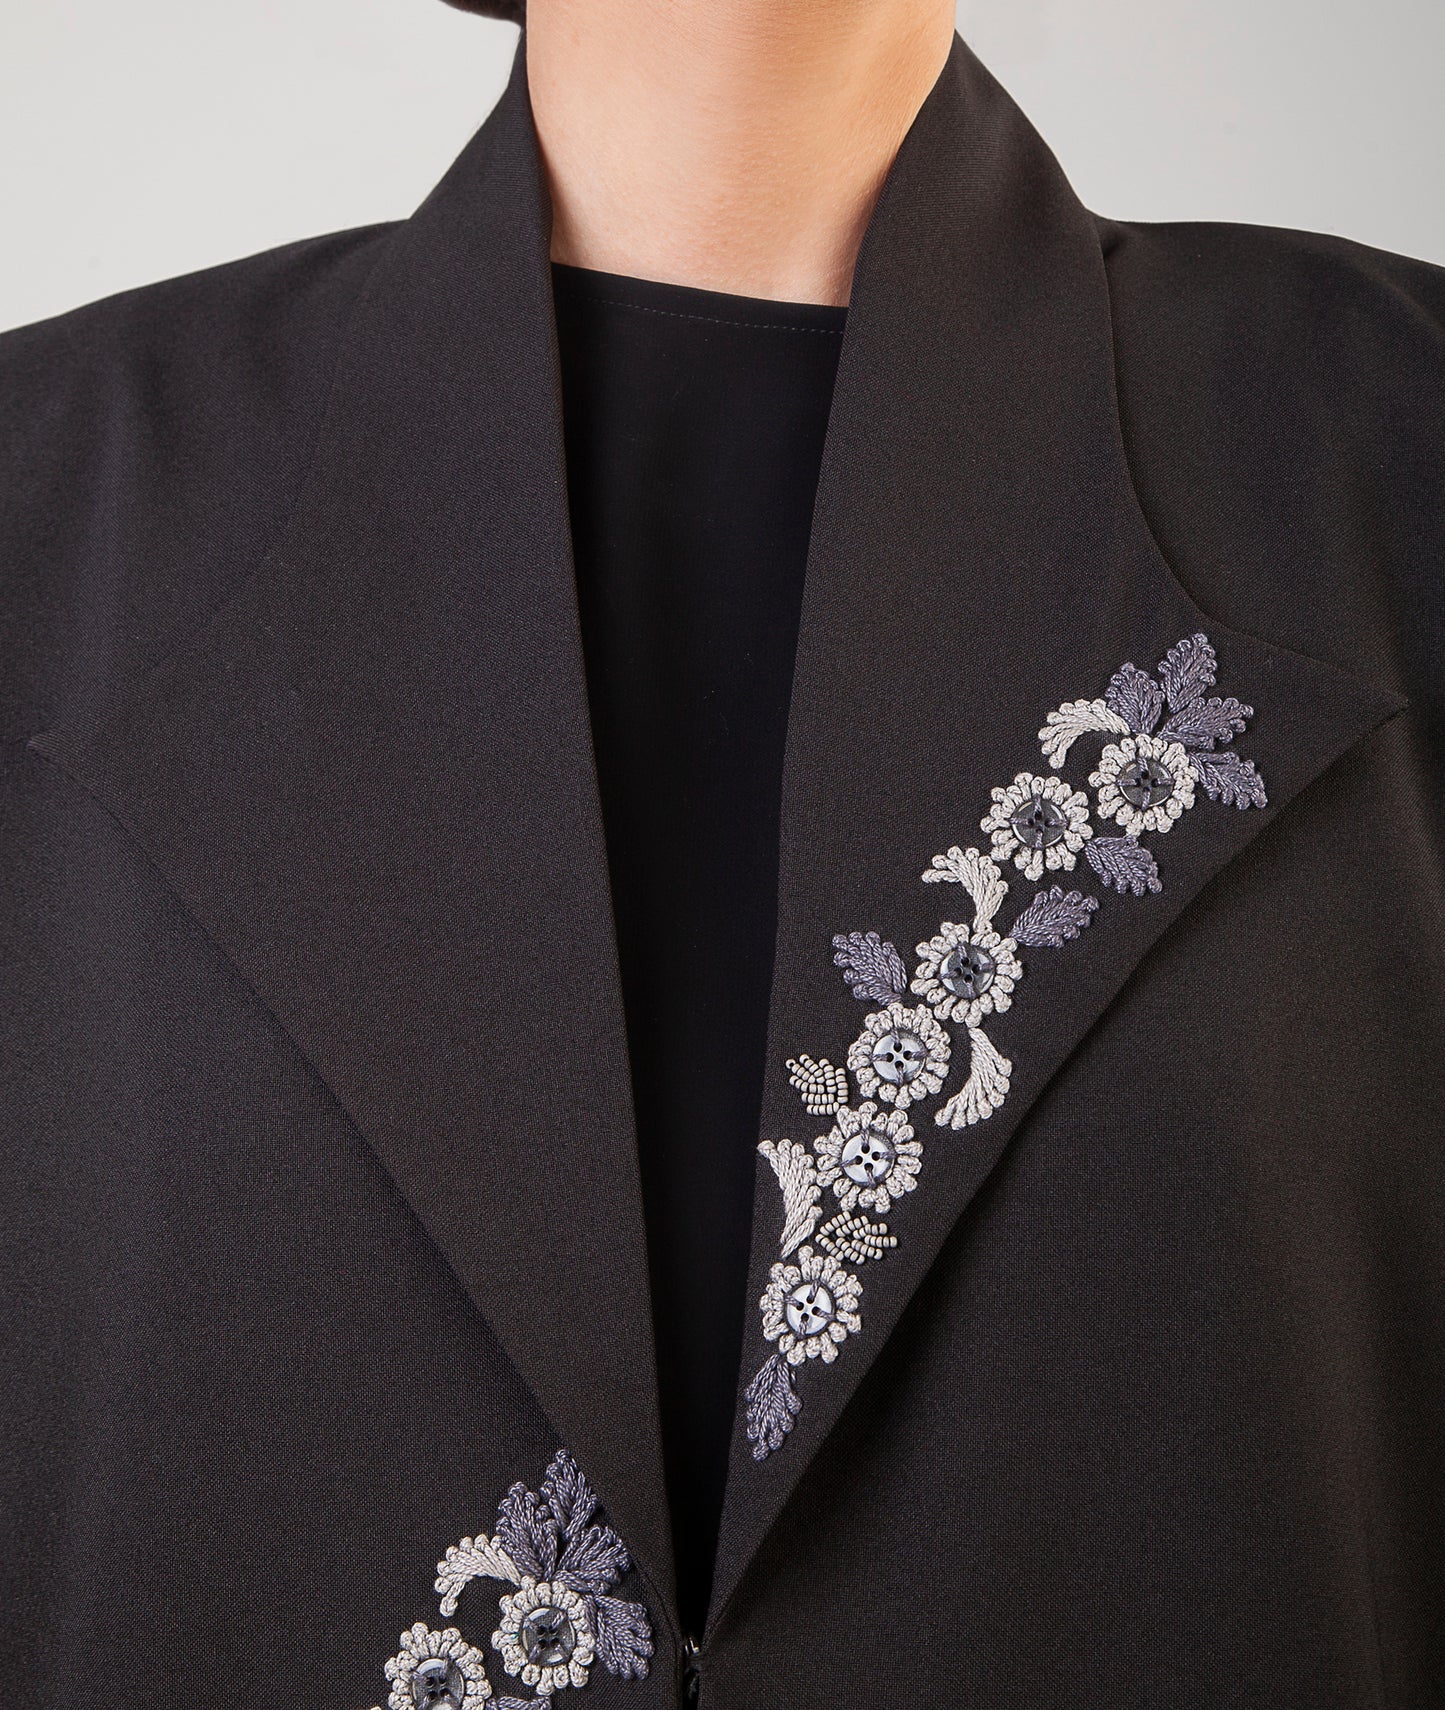 Floral Design Jacket Abaya In Black